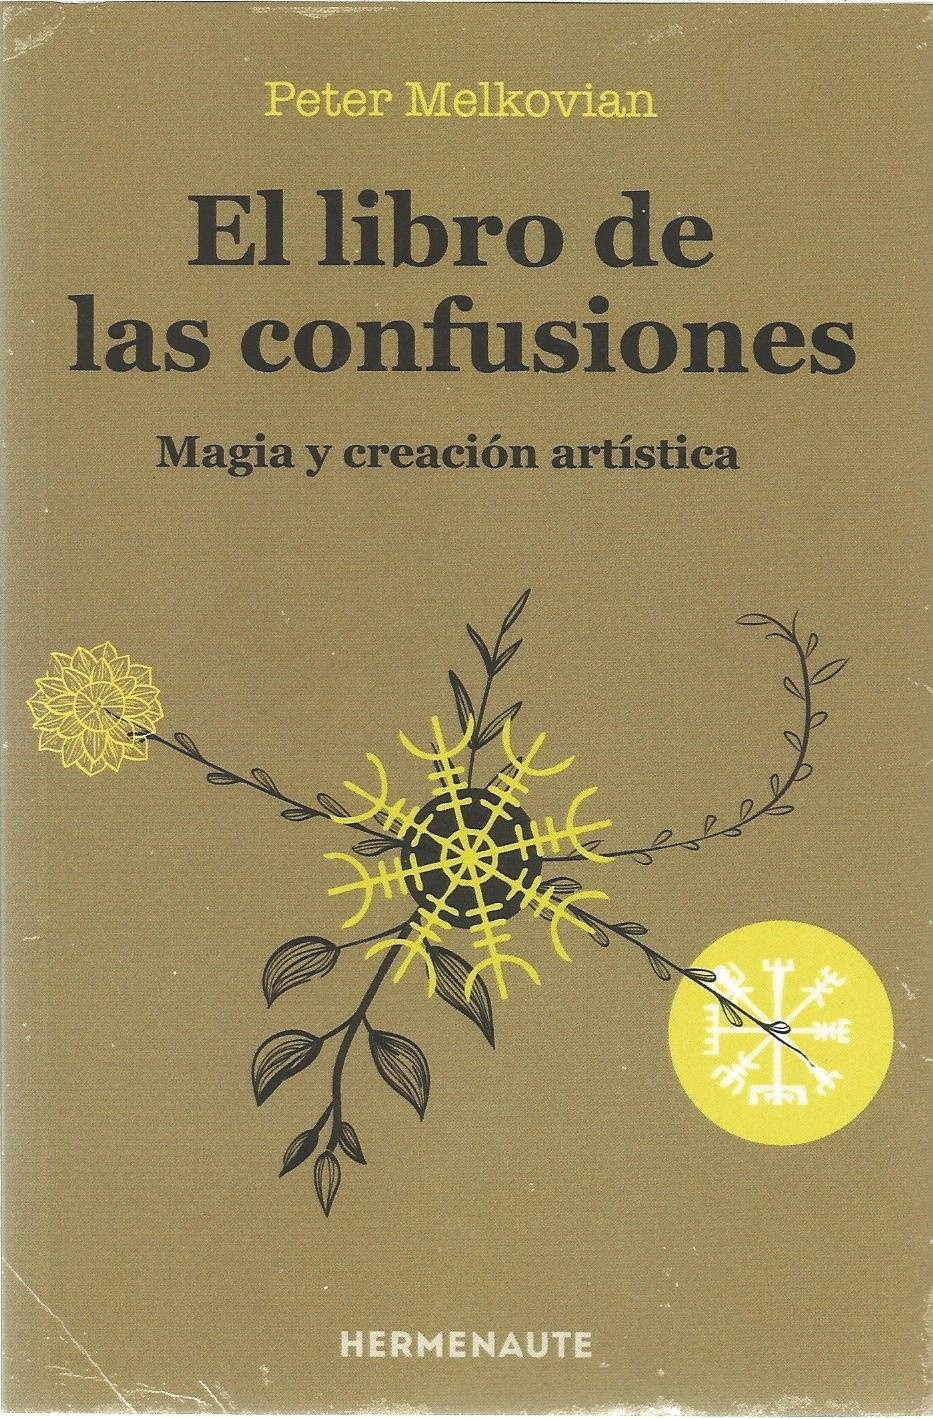 Libro de las confusiones, El "Magia y creación artística"